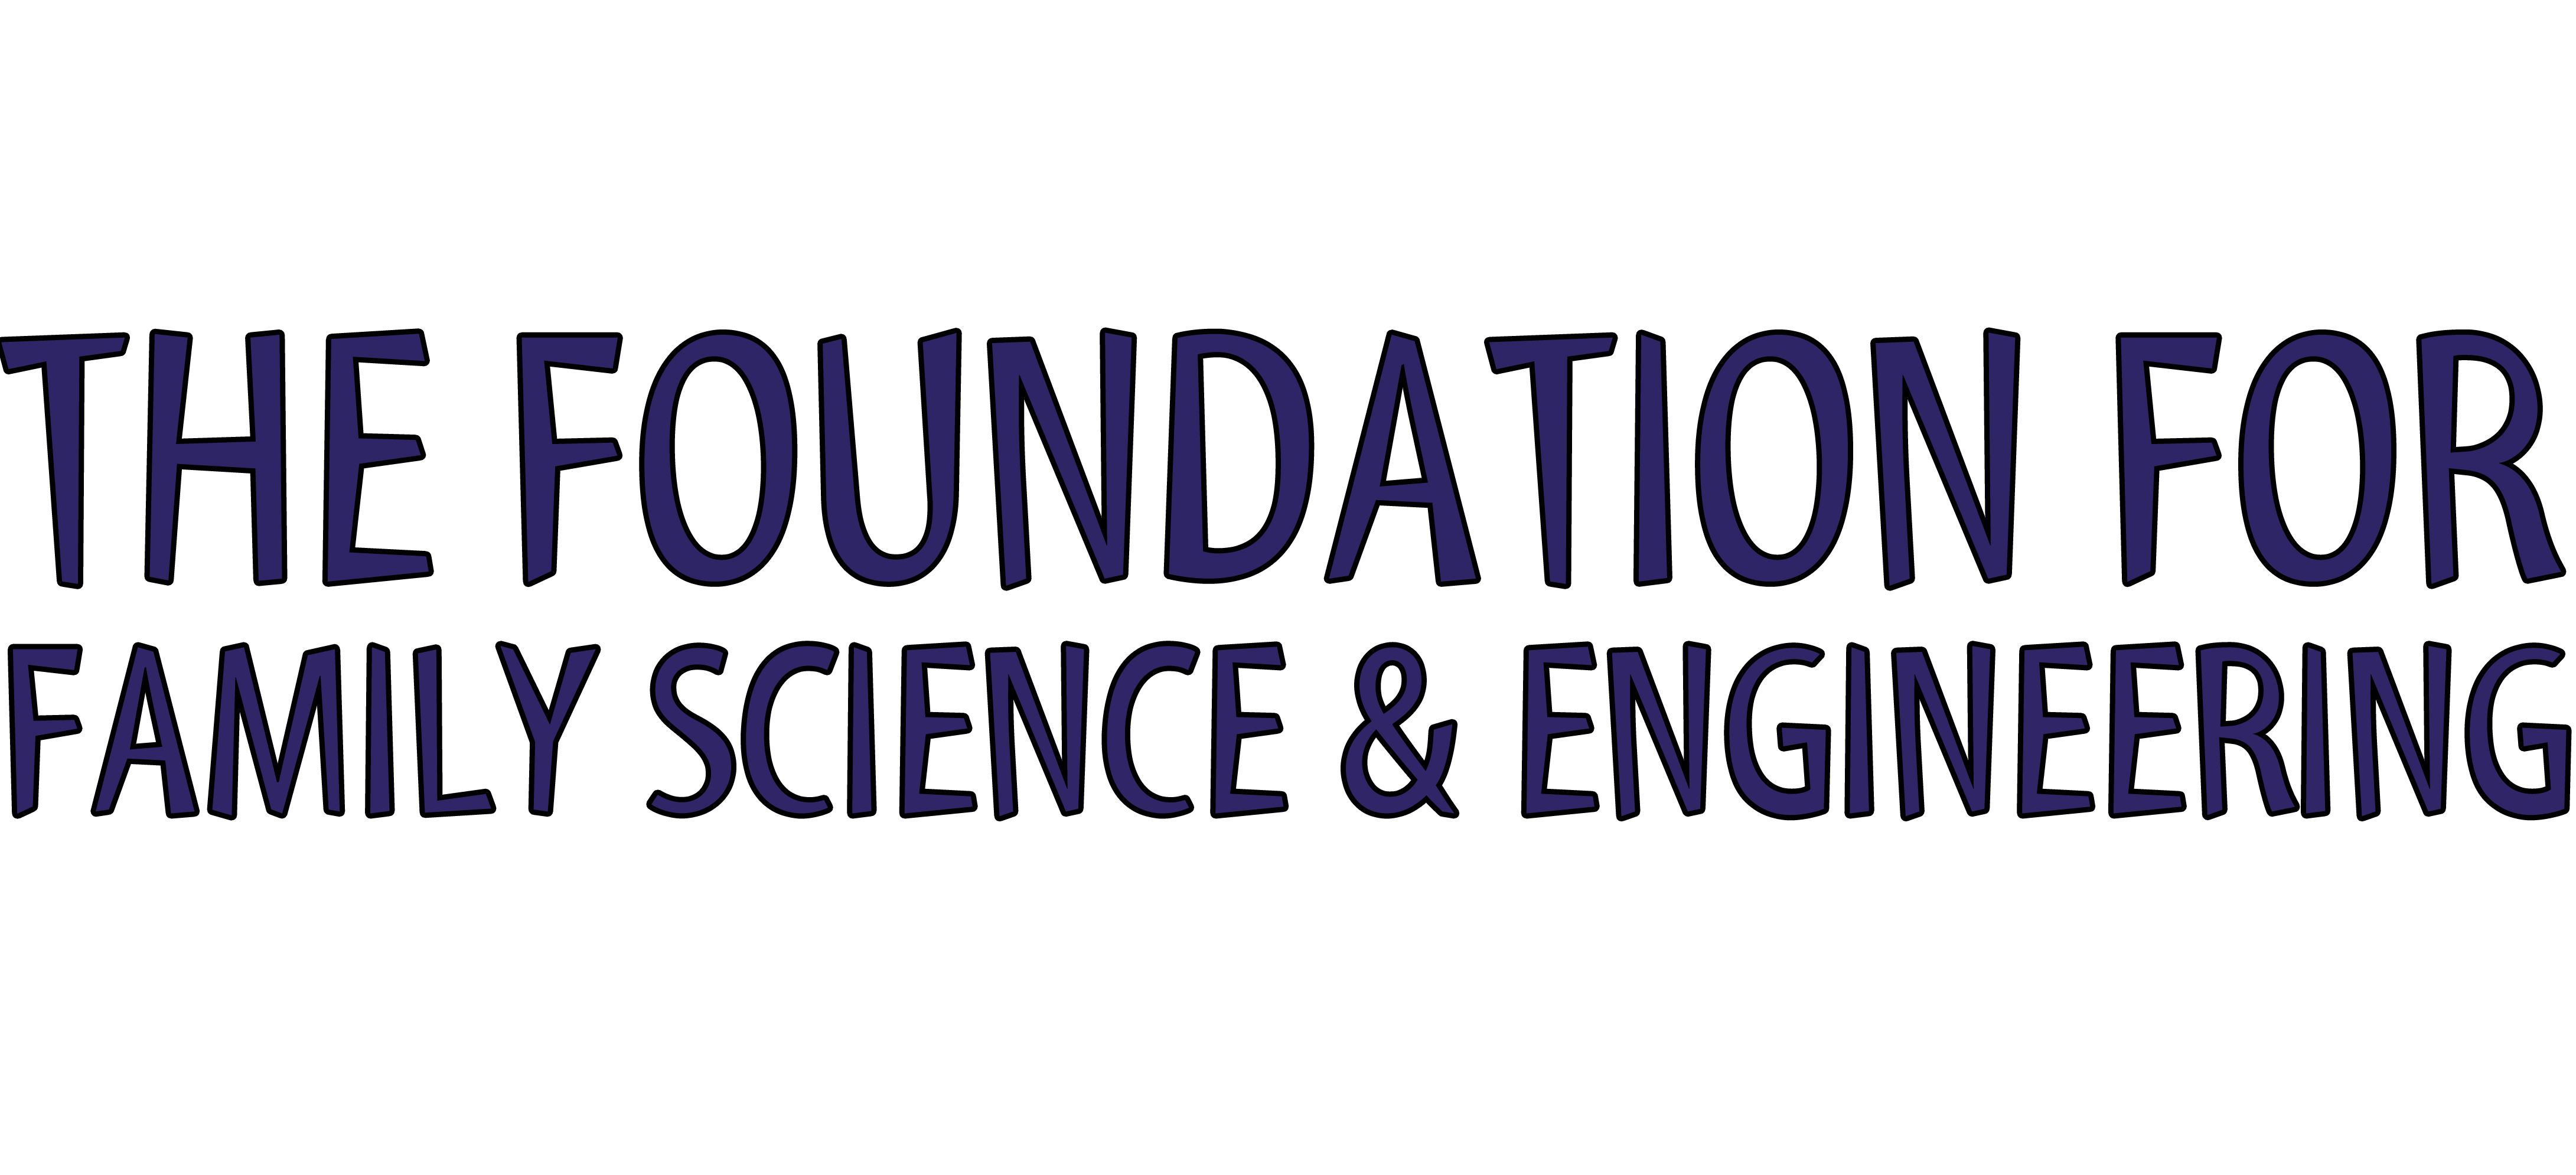 FFS Logo